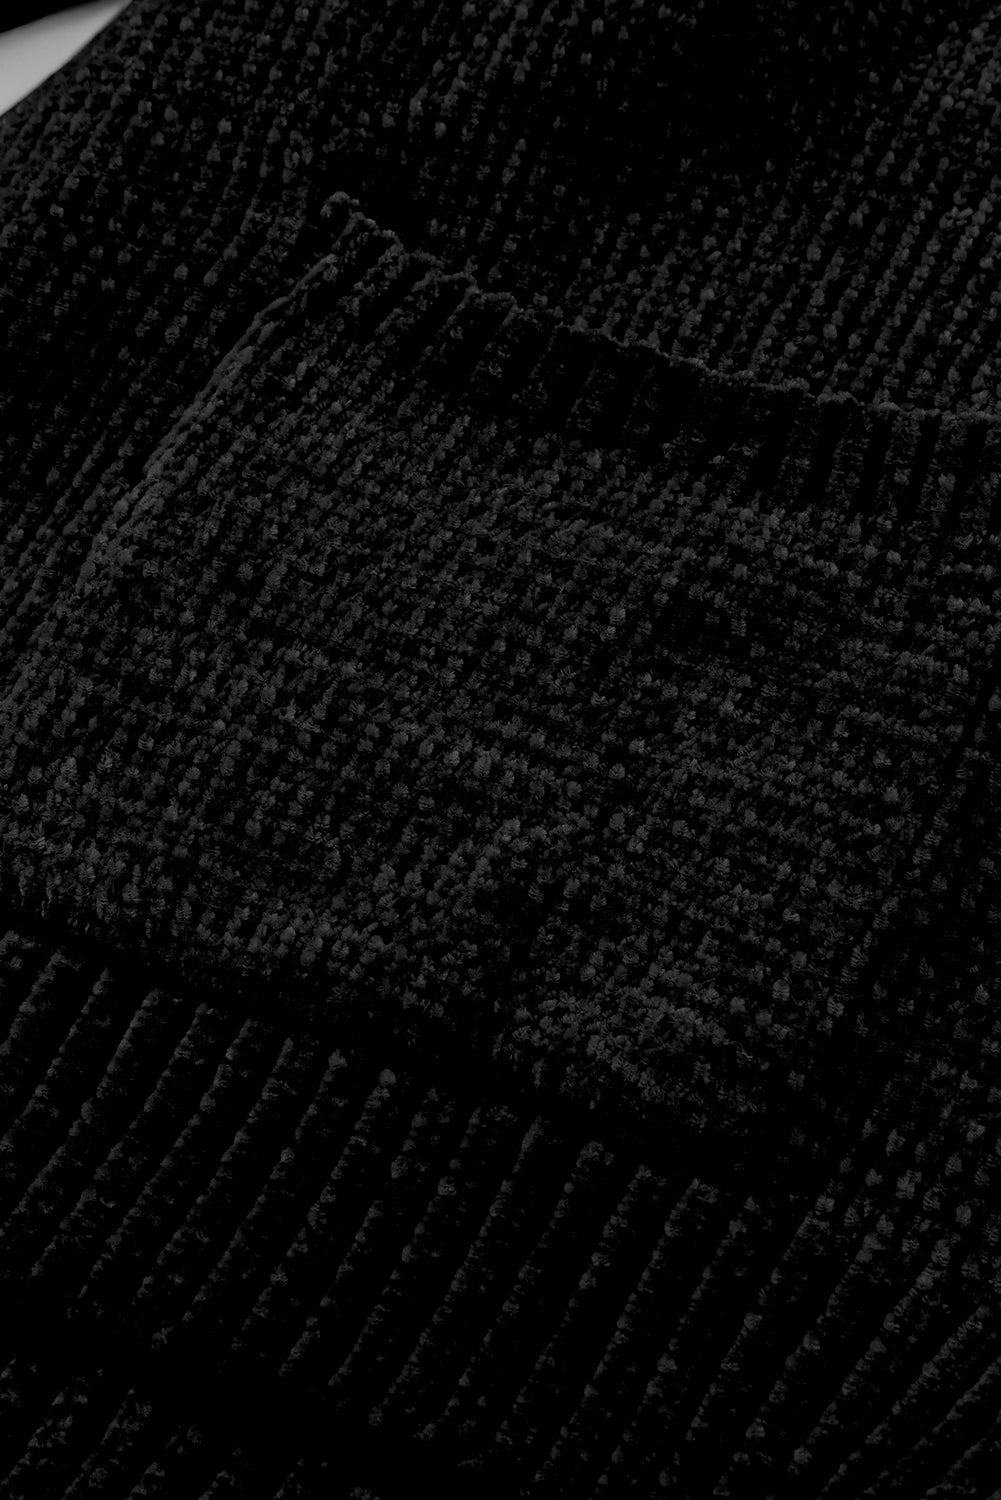 Schwarzer Pullover-Cardigan mit Knöpfen vorne und Taschen